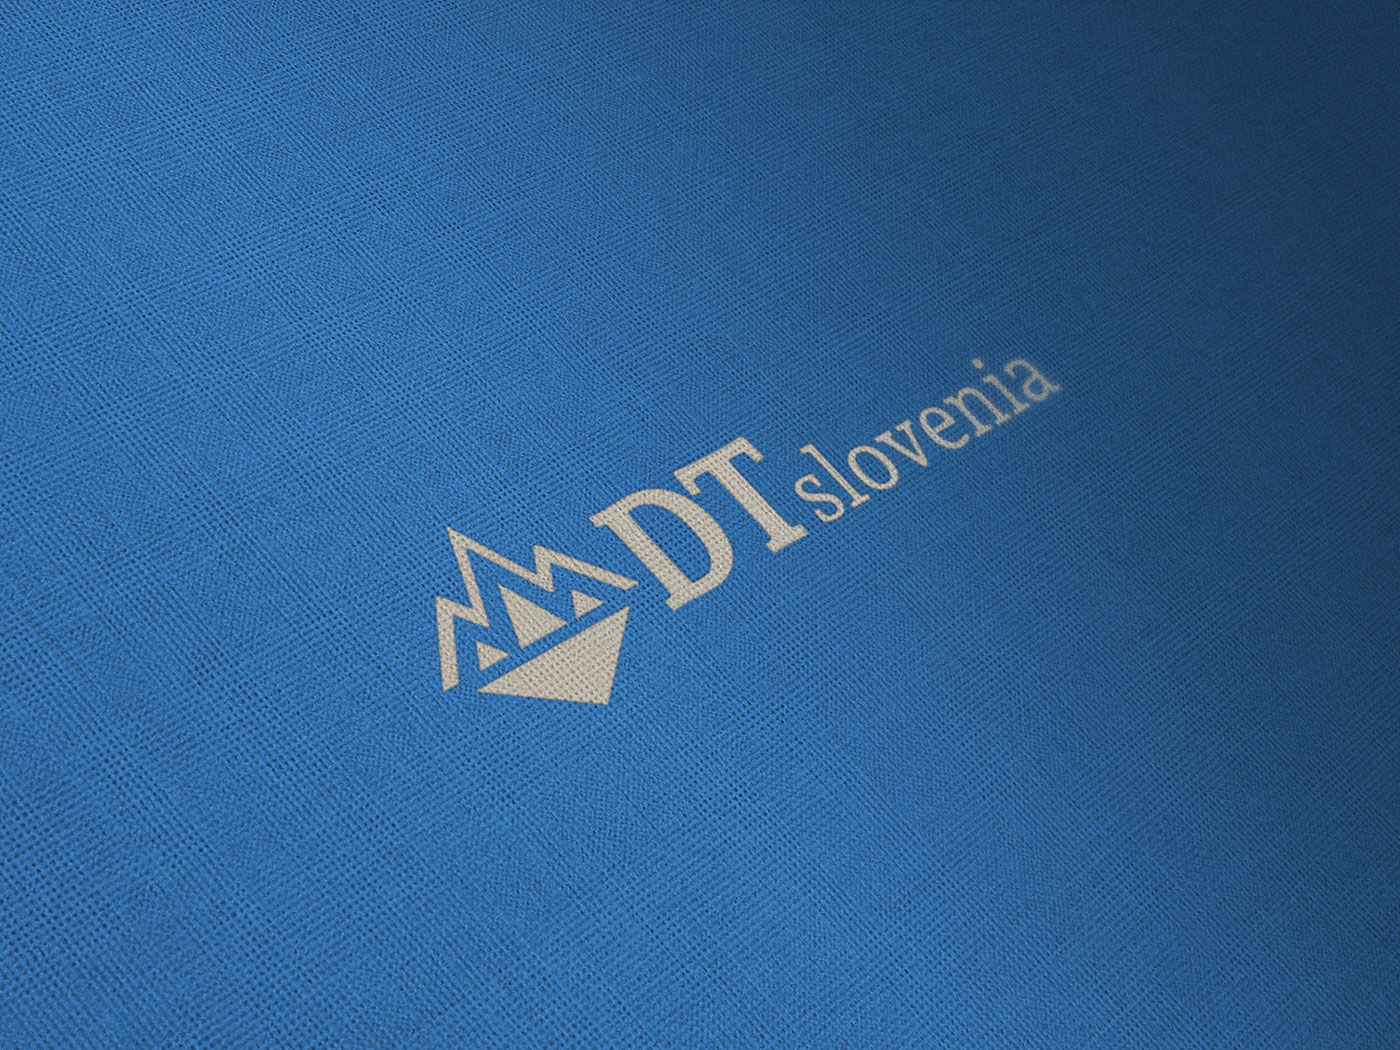 Travel travel management logo Logo Design Brand Design Dubrovnik Croatia slovenia